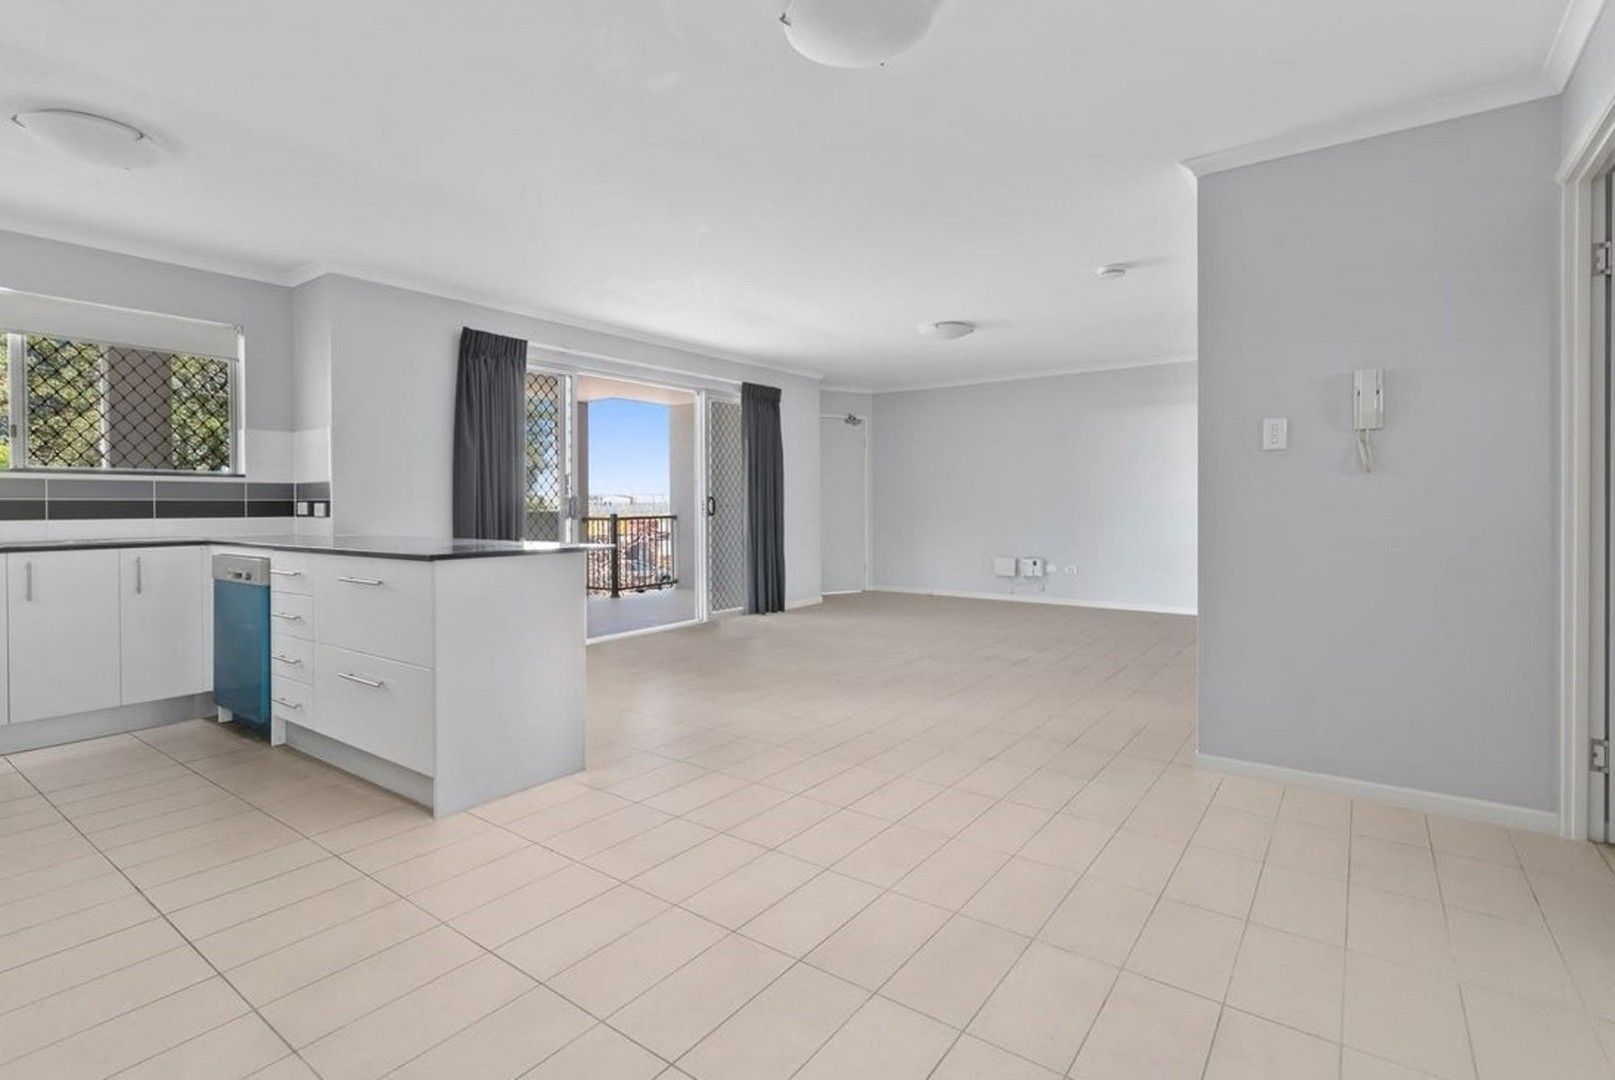 2 bedrooms Apartment / Unit / Flat in 6/46 Silva Street ASCOT QLD, 4007